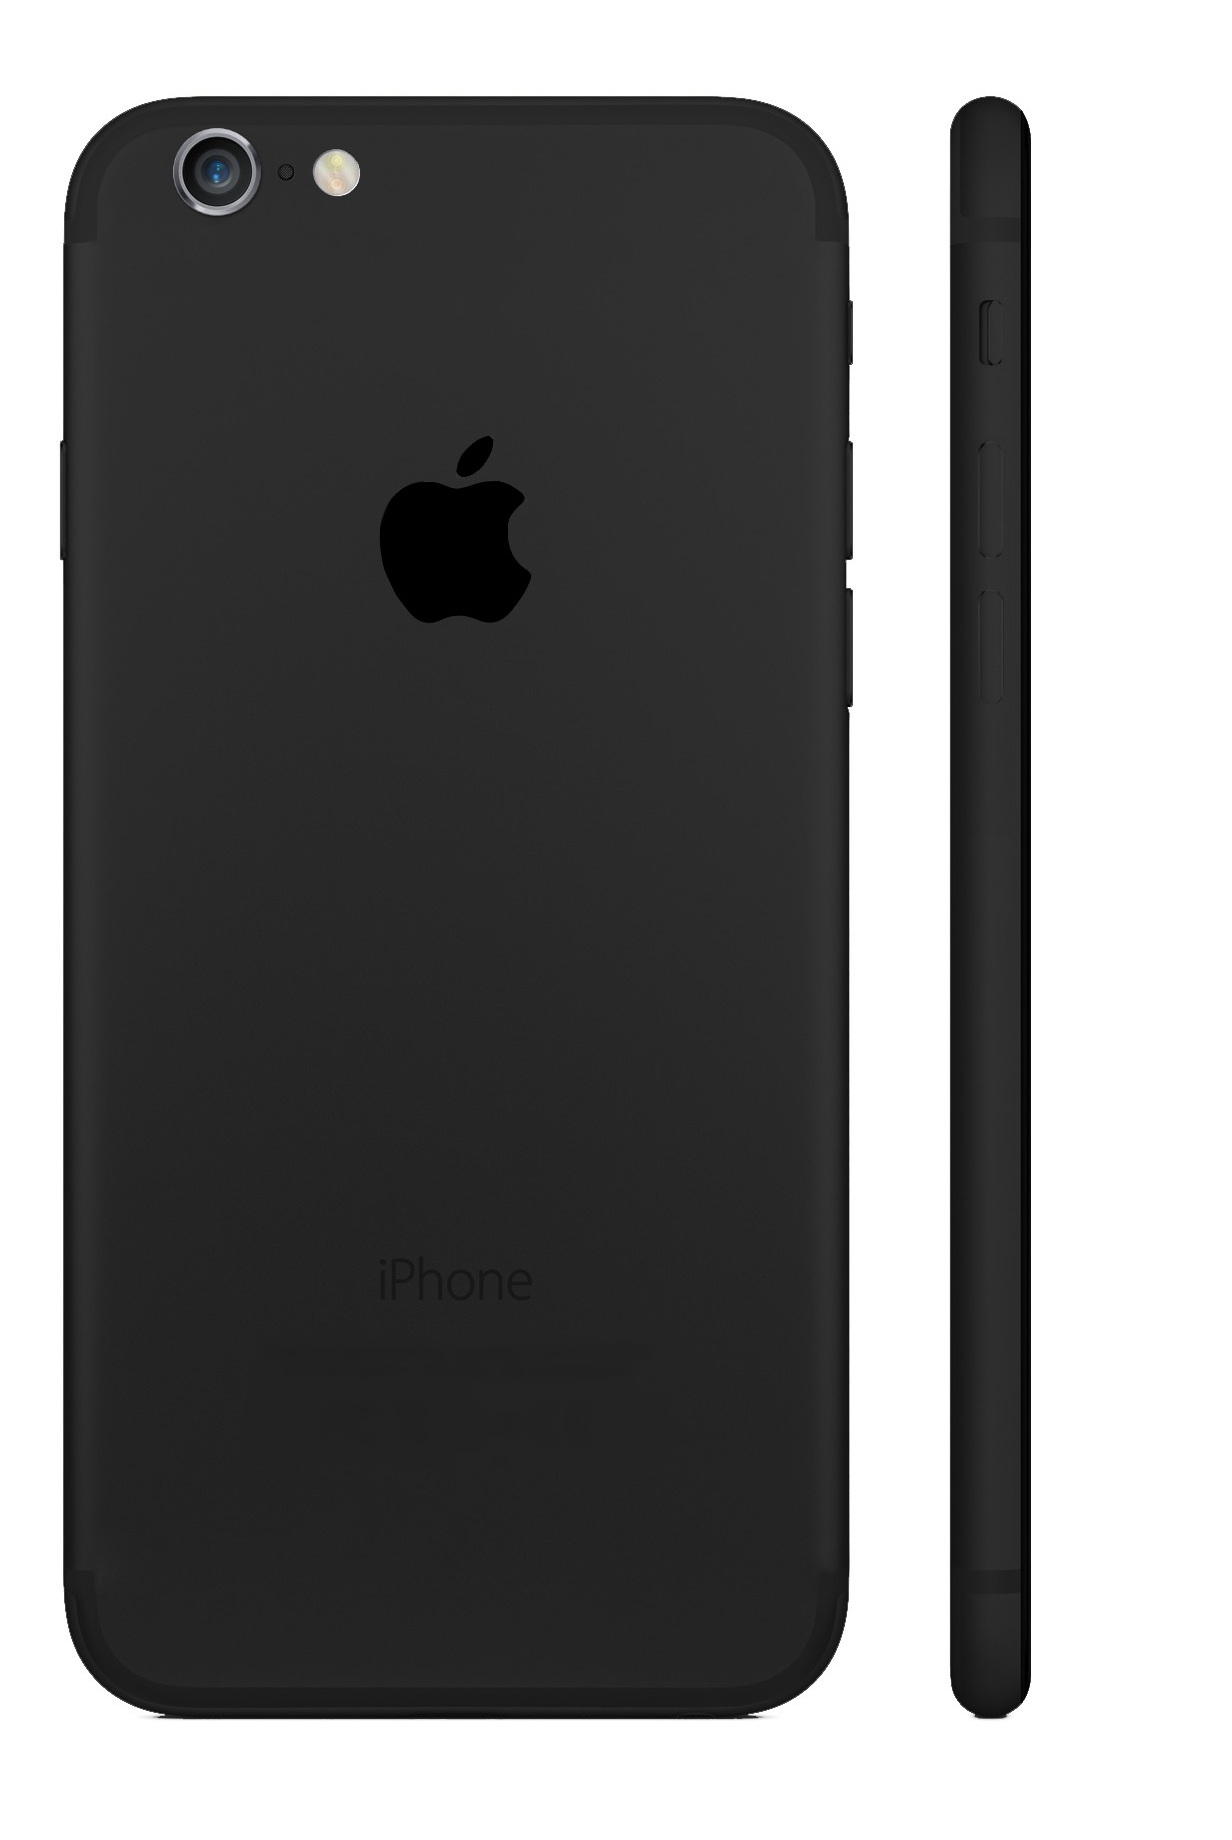 Iphone 7 plus 128gb đen bóng Đã qua sử dụng, giá: 16.300.000đ, gọi: 0983  792 927, Quận 2 - Hồ Chí Minh, id-19e80d00